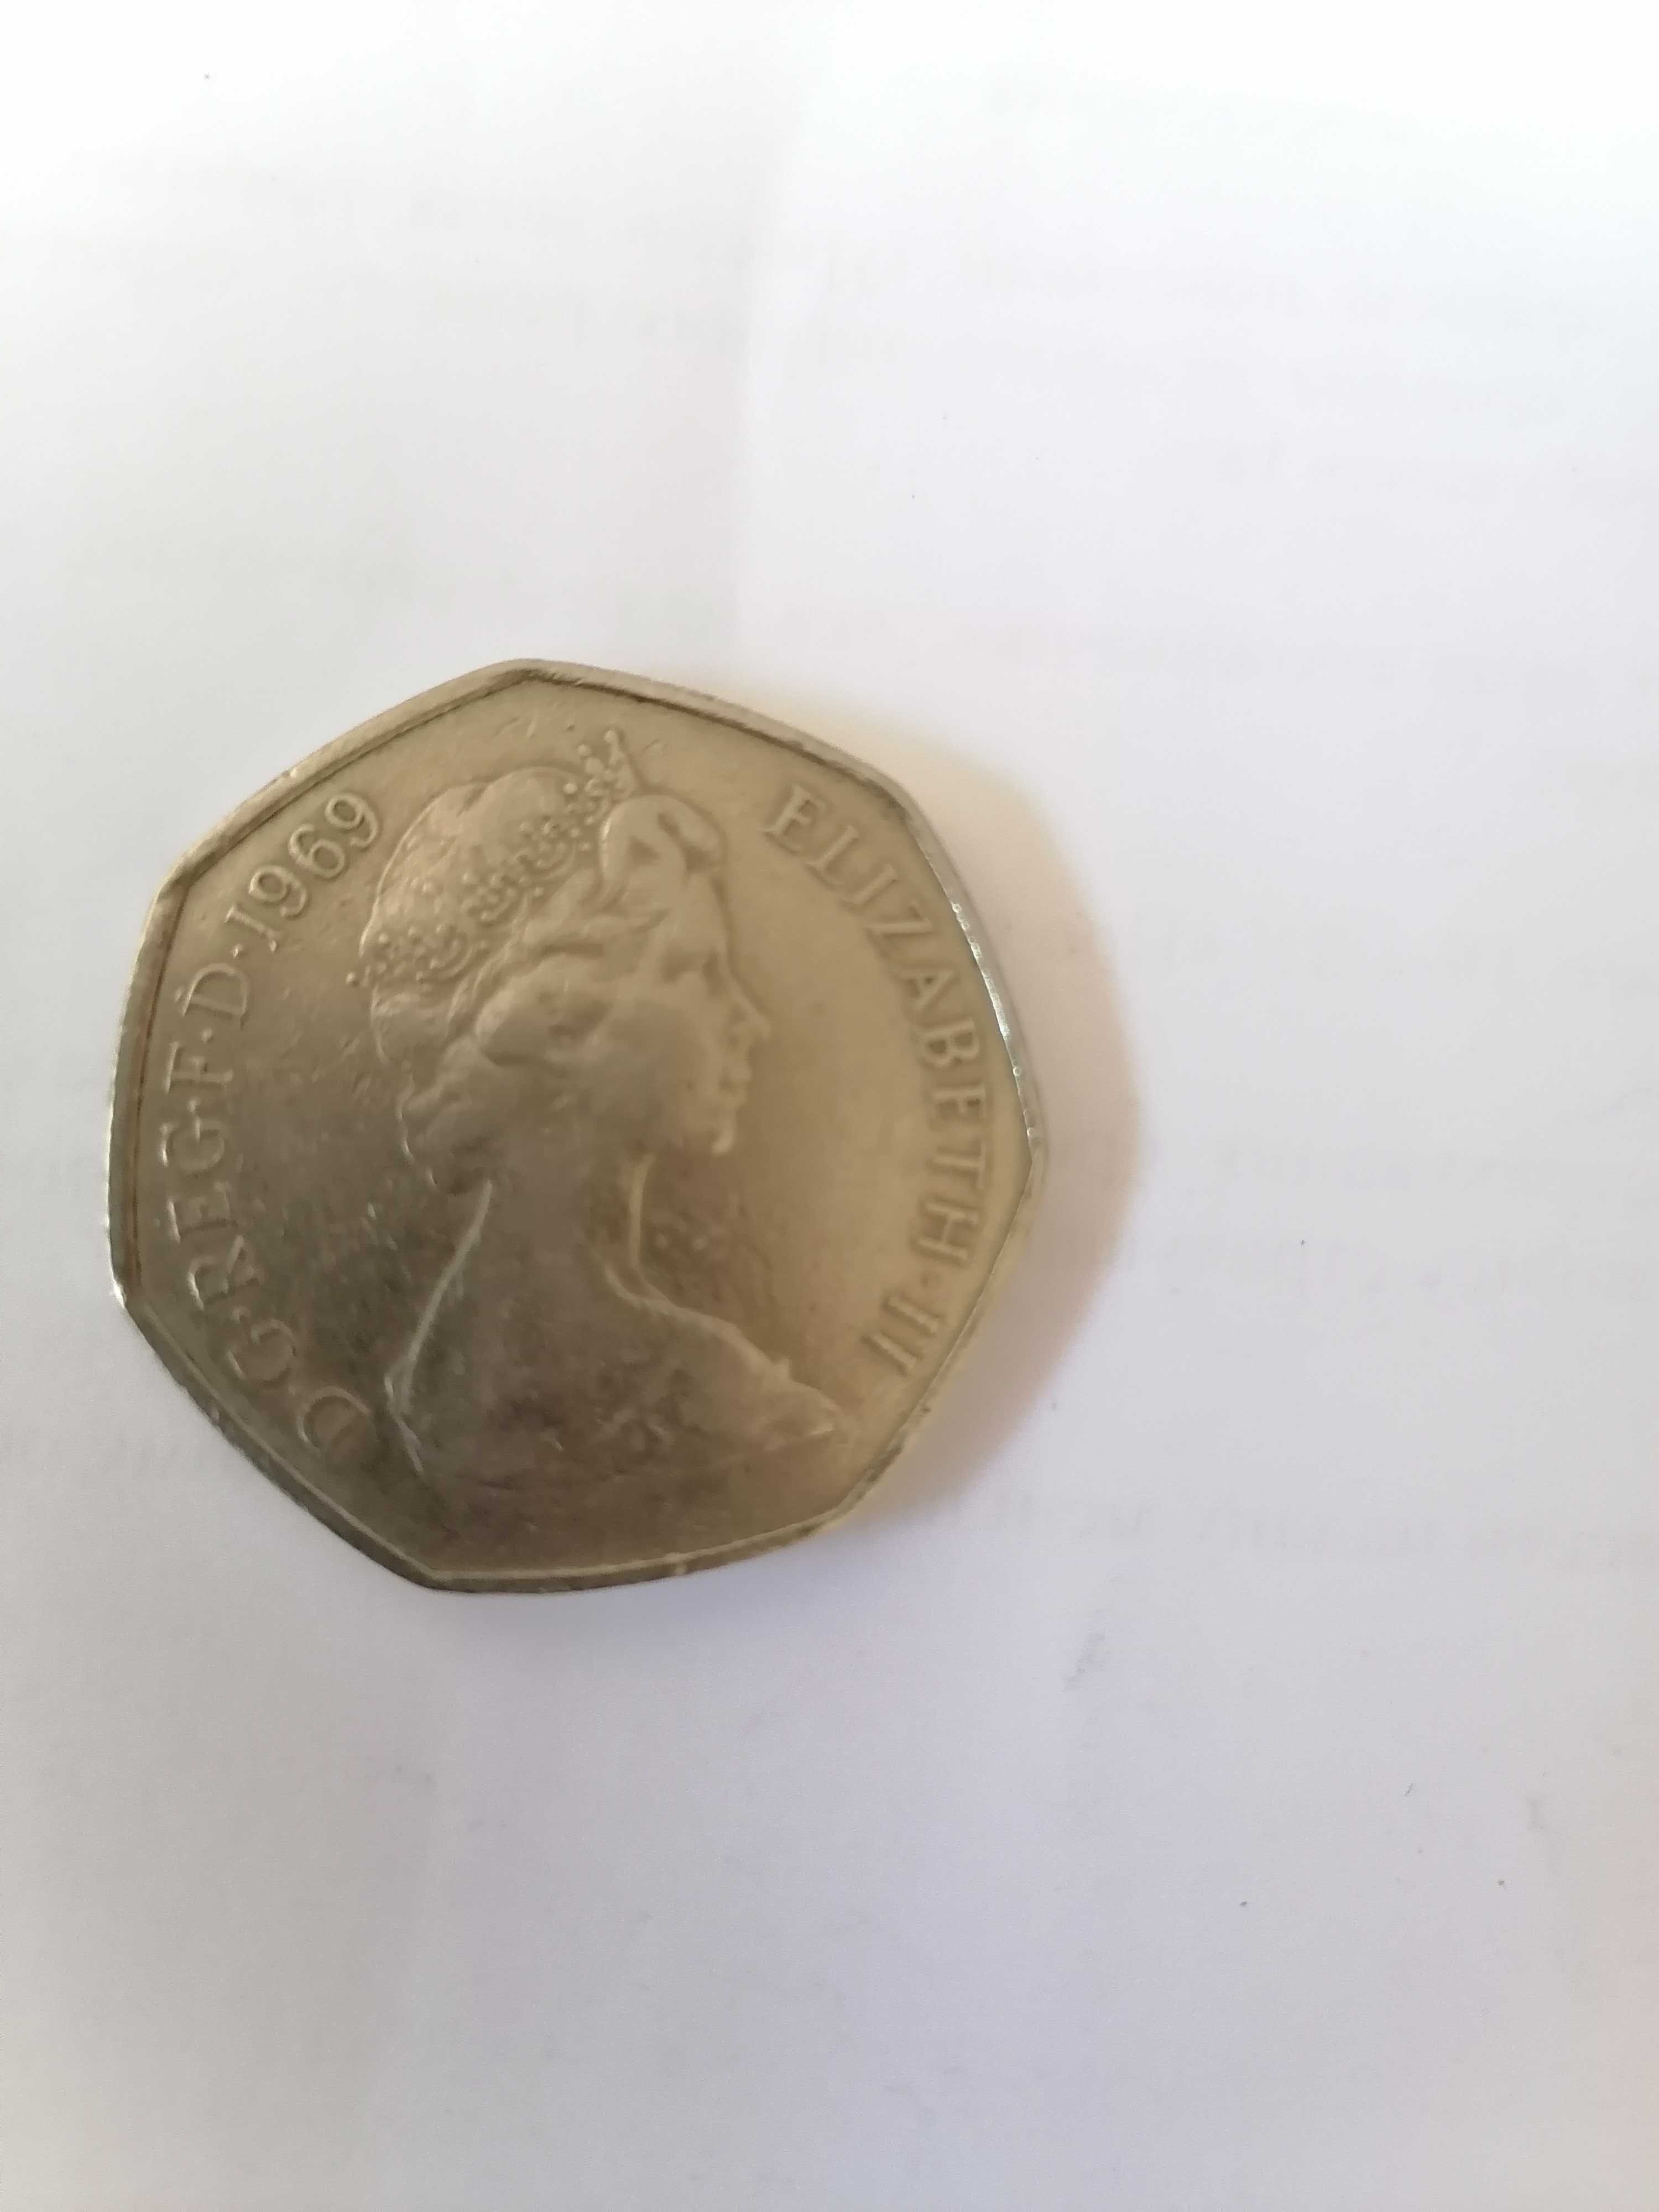 Монета New pence